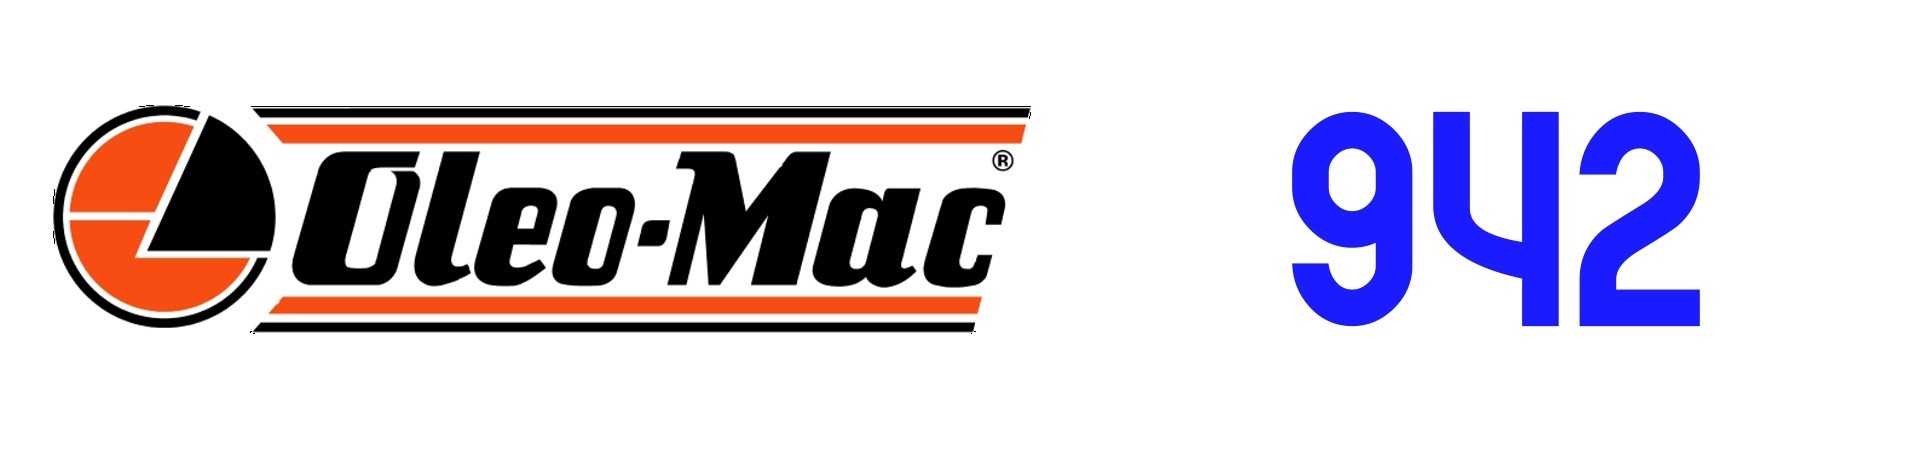 RECAMBIOS Motosierra Oleo Mac 942 al Mejor PRECIO